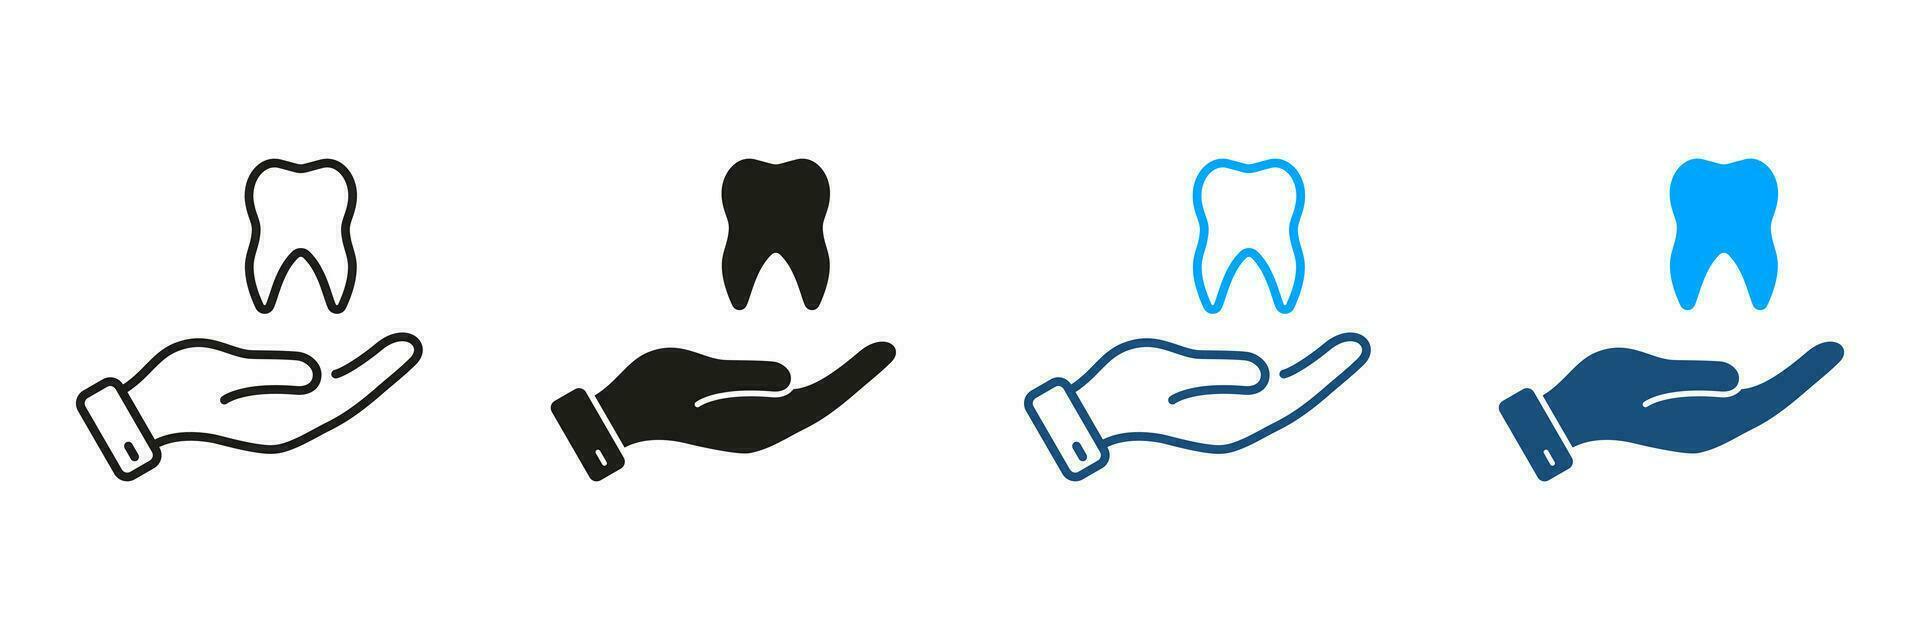 dentale trattamento, stomatologia protezione pittogramma. dente e umano mano. dentale cura silhouette e linea icone impostare. odontoiatria, dentista supporto simbolo collezione. isolato vettore illustrazione.